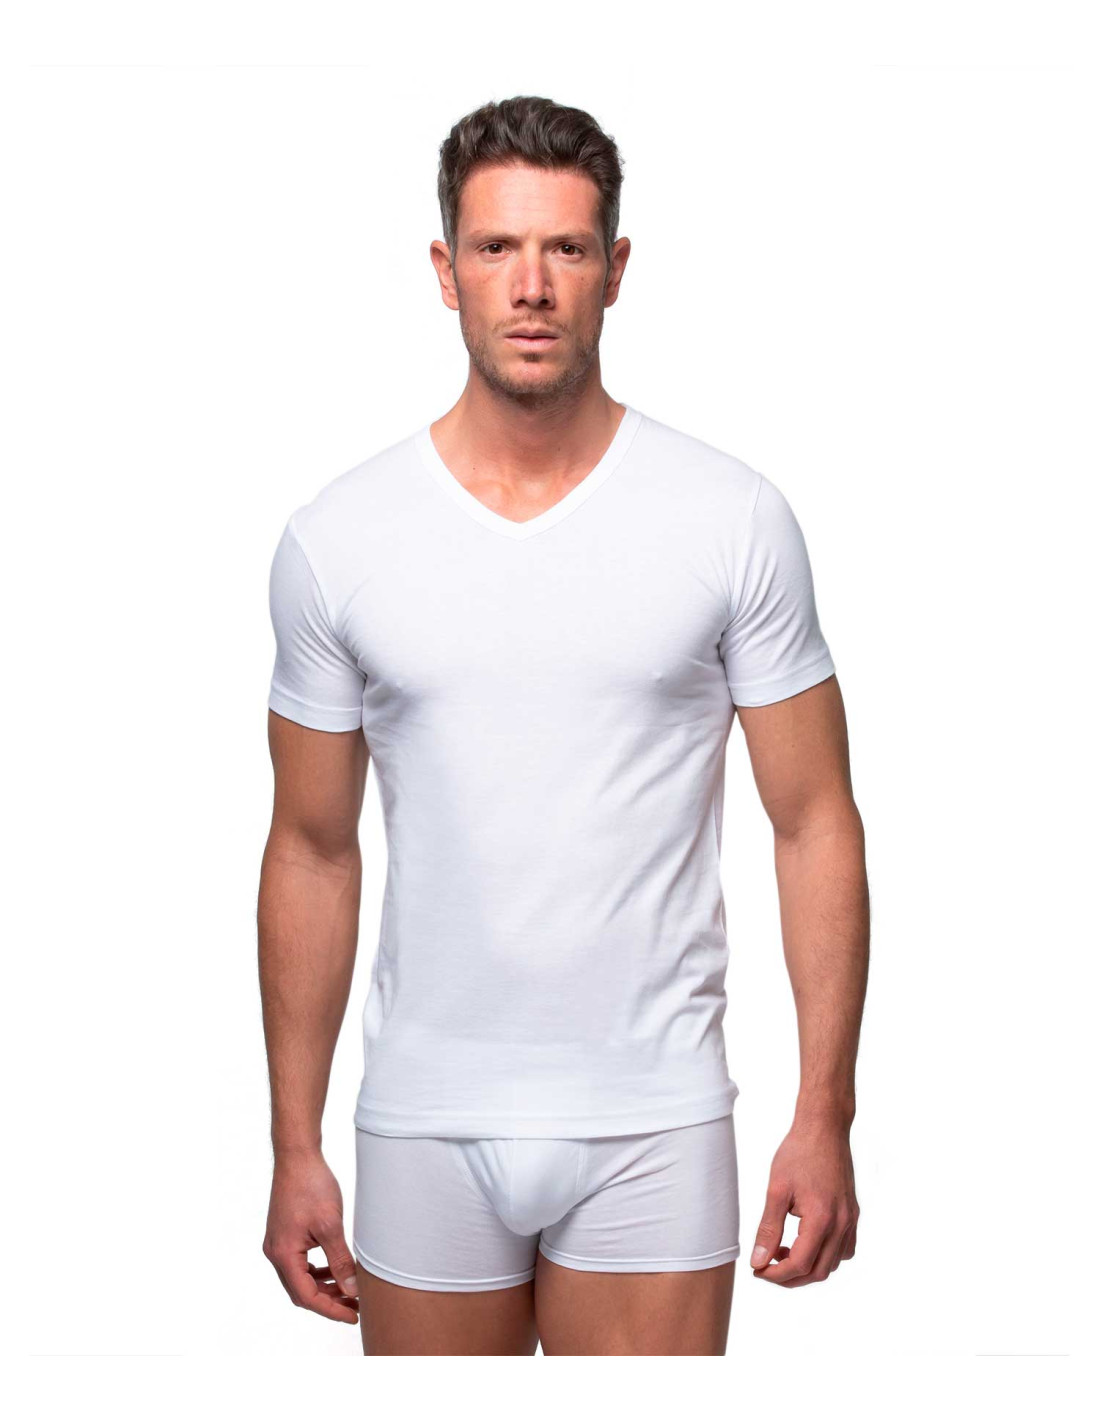 Camiseta interior manga larga hombre cuello pico blanca  OM Hogar ® Tienda  online de telas, cortinas, complementos del hogar y moda.